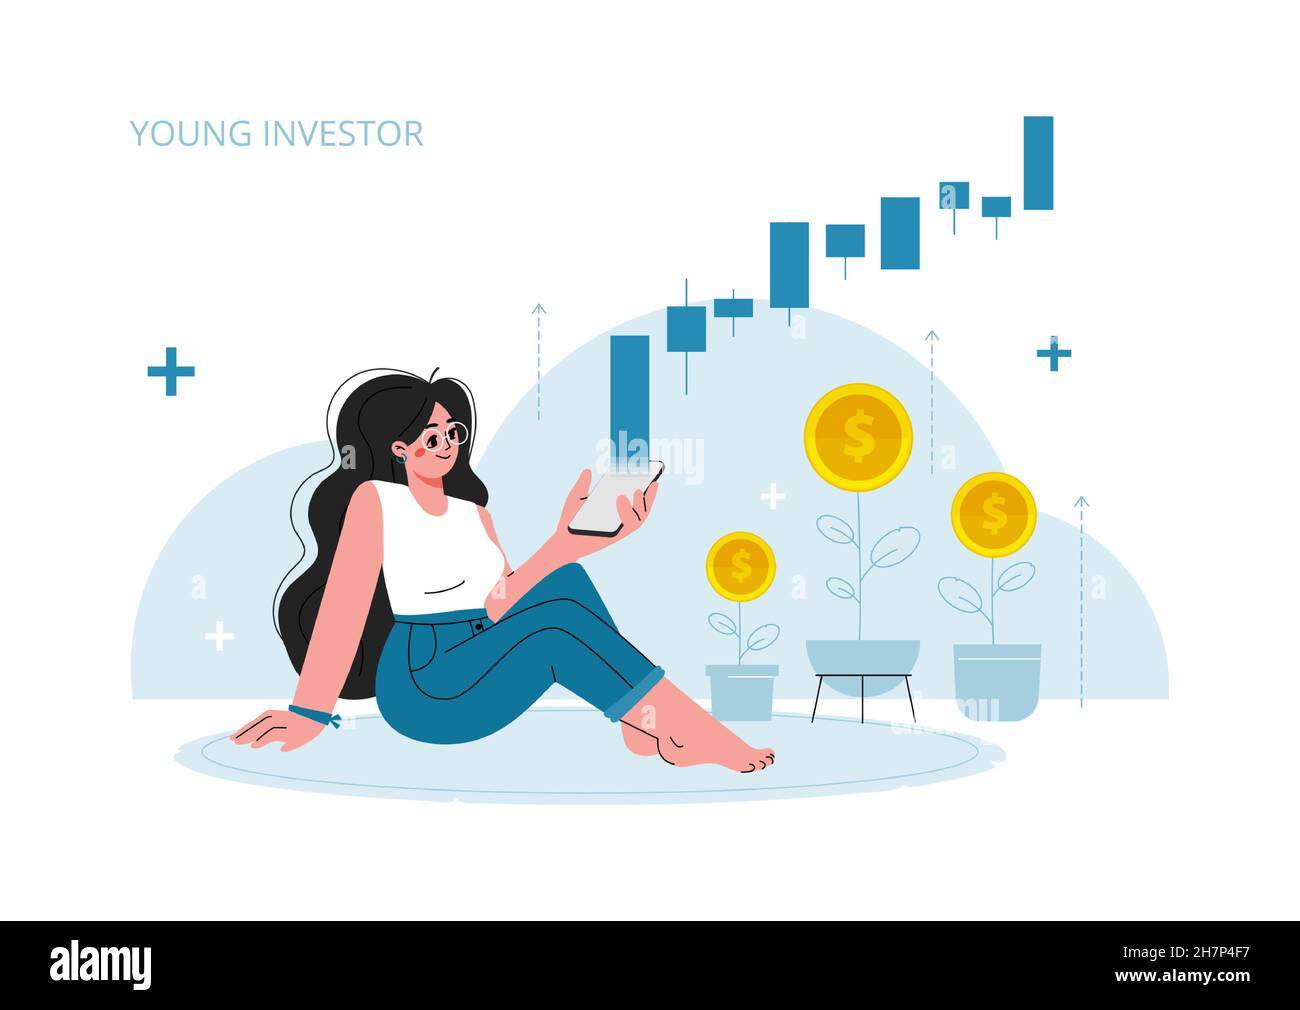 Das Mädchen sitzt zu Hause auf dem Boden und schaut auf ihr Telefon, die Aktienmarktinvestitionen, das Wachstum, das Einkommensgeld, die steigende Rate, Profit, junge Generation.Vector Stock Vektor